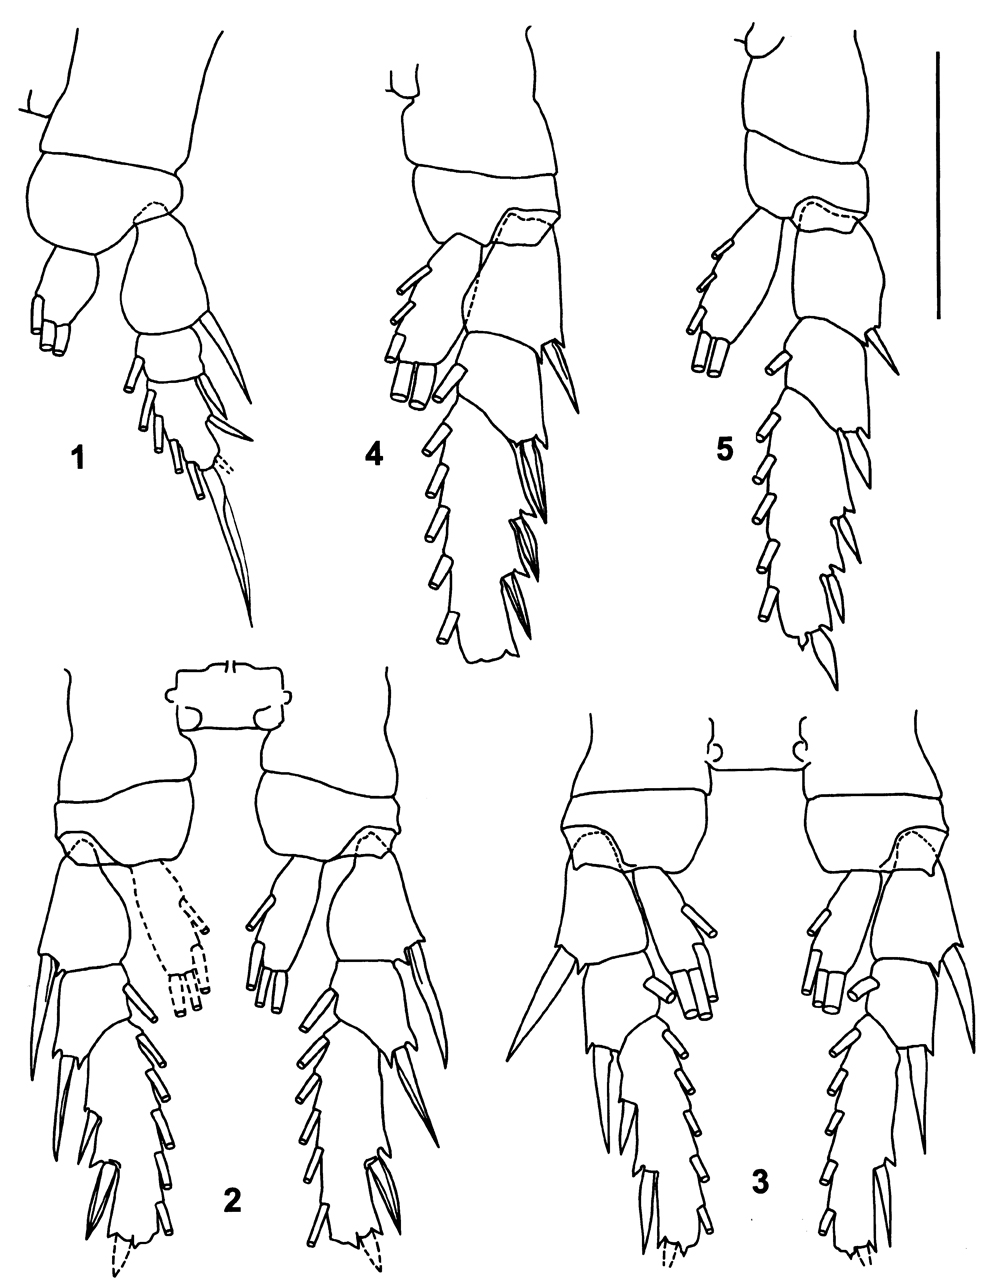 Espce Pertsovius heterodentatus - Planche 2 de figures morphologiques